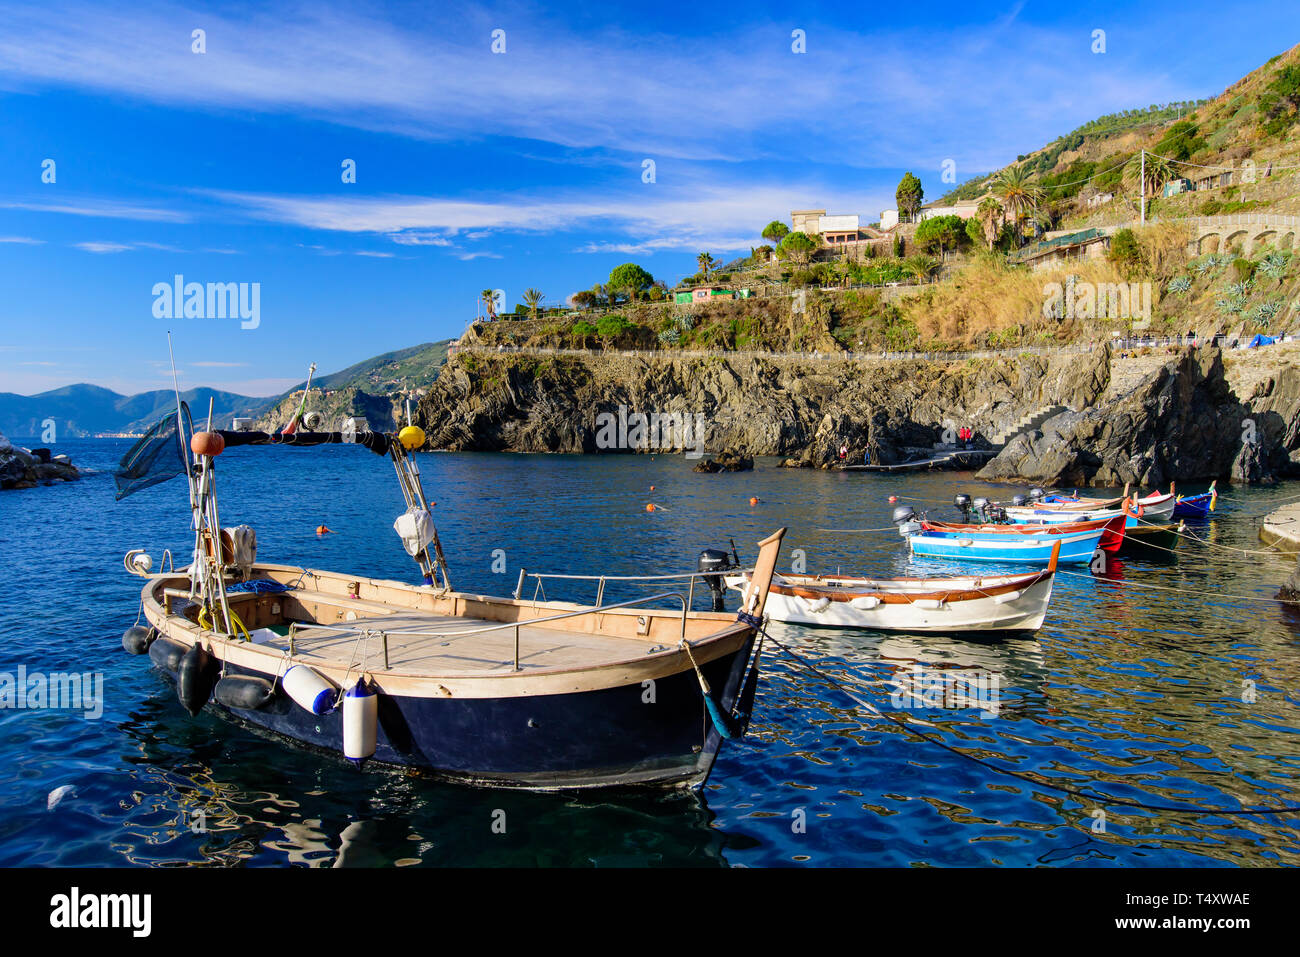 Des bateaux de pêche à Manarola, l'un des cinq villages méditerranéens à Cinque Terre, Italie, célèbre pour ses maisons colorées et son port Banque D'Images